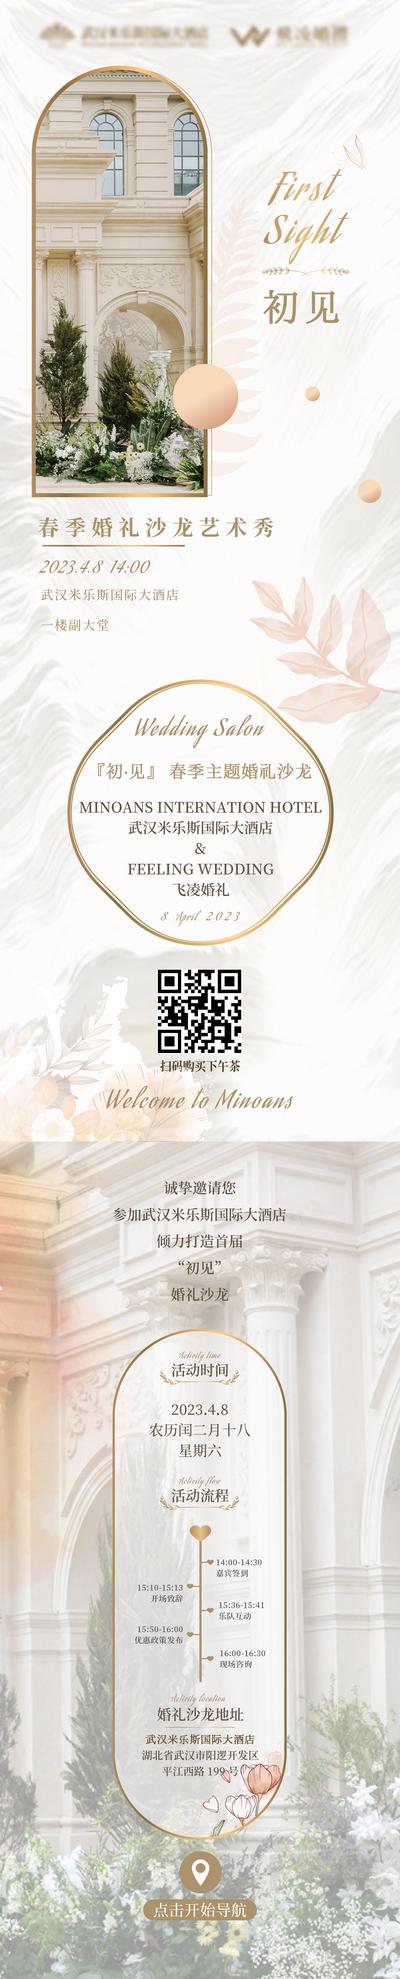 南门网 海报 酒店 婚礼 欧式 高端 婚纱 沙龙